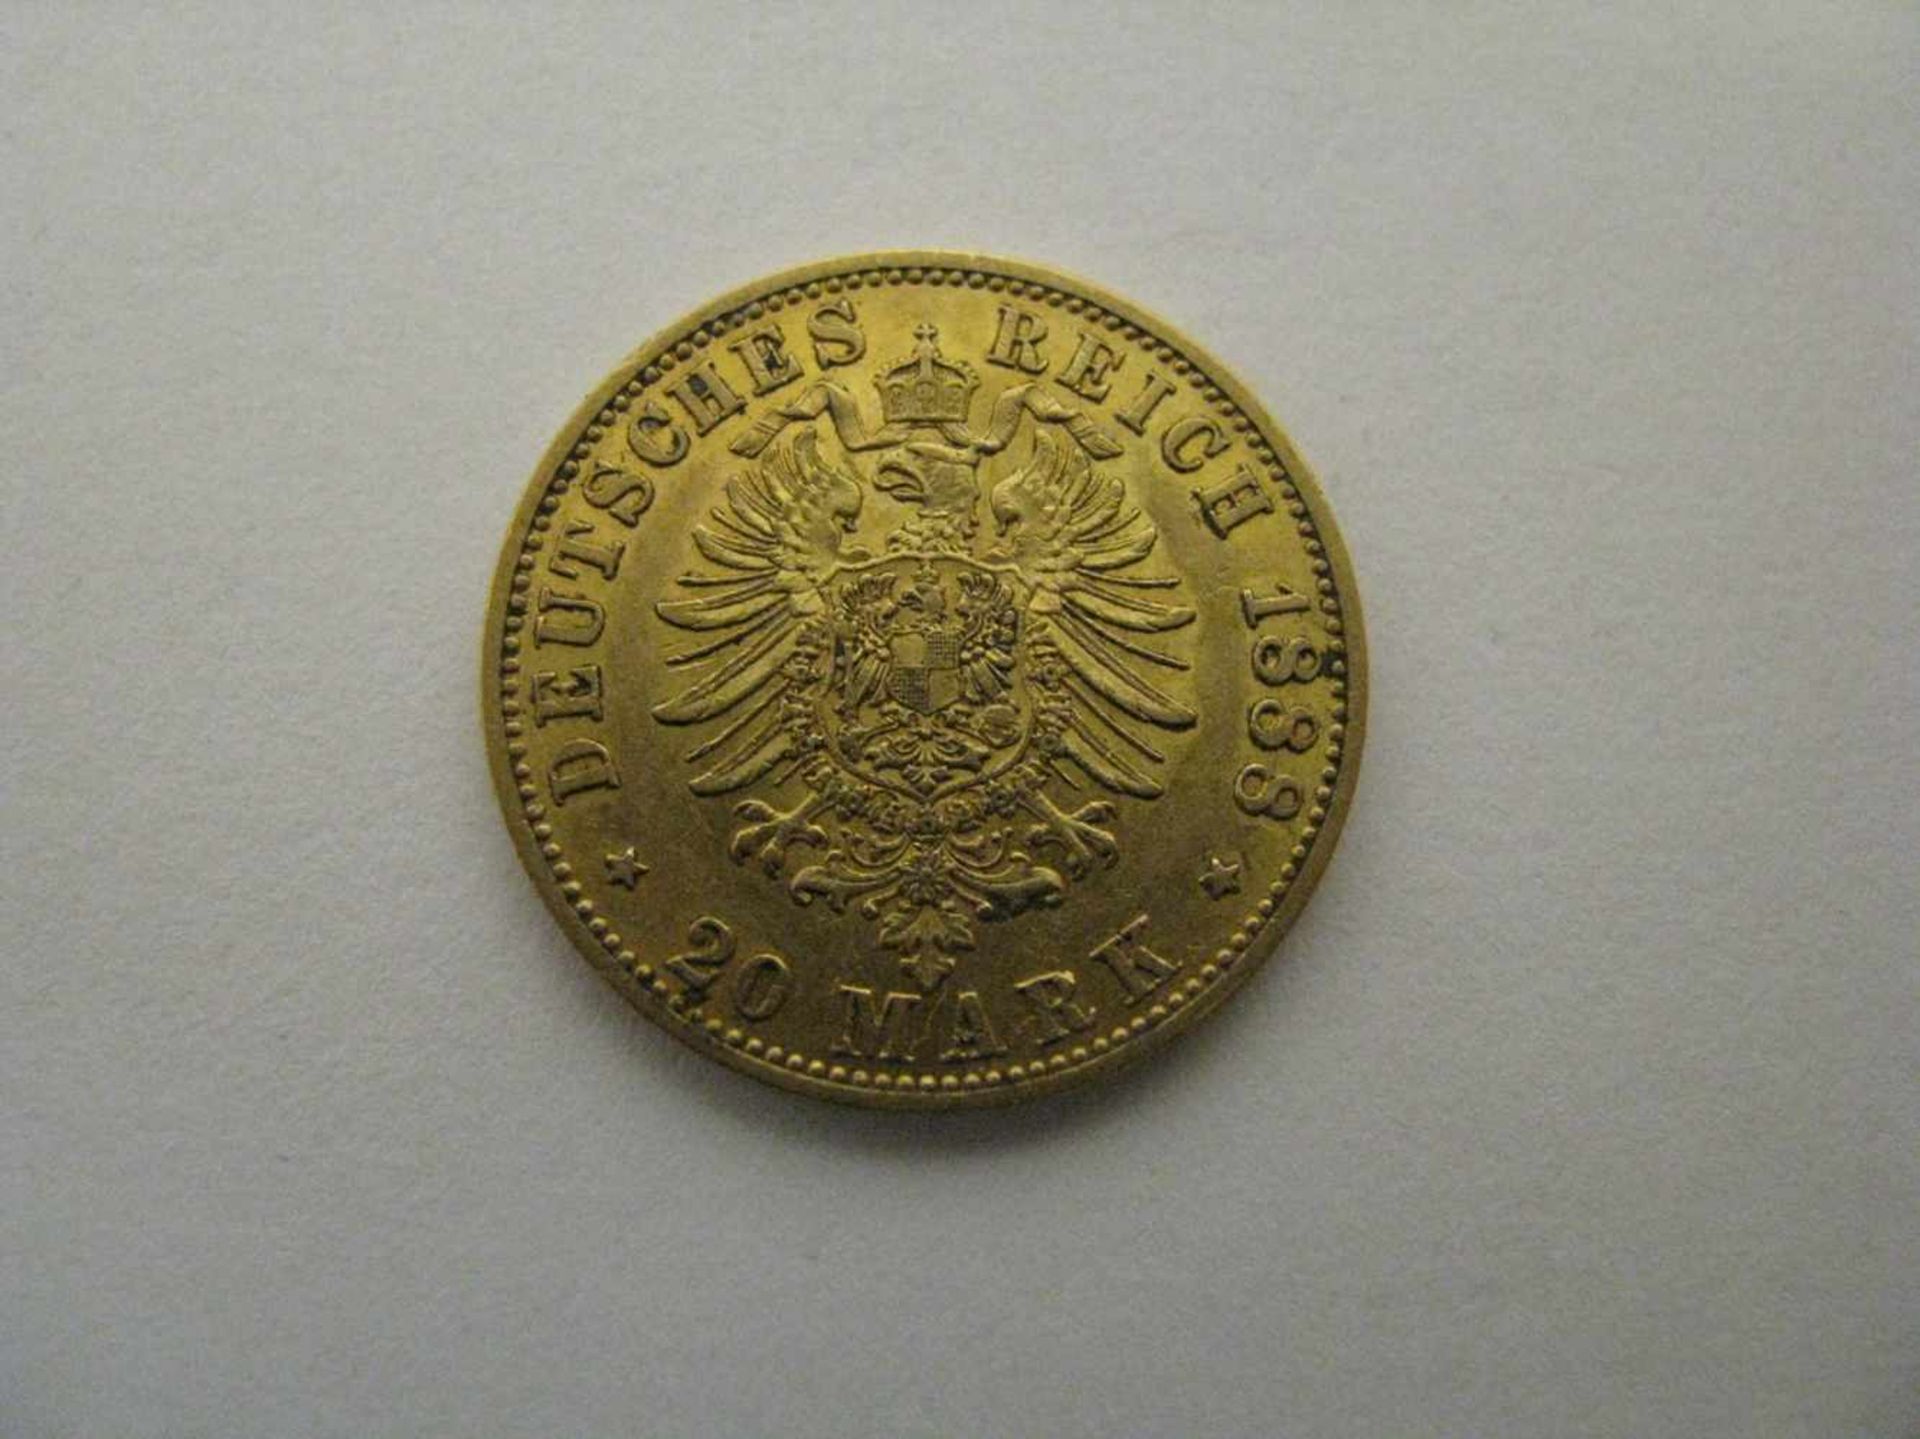 Goldmünze, 20 Mark, Friedrich Kaiser von Preußen, Deutsches Reich 1888, 7,94 g, d 2,2 cm.- - -19. - Bild 2 aus 2